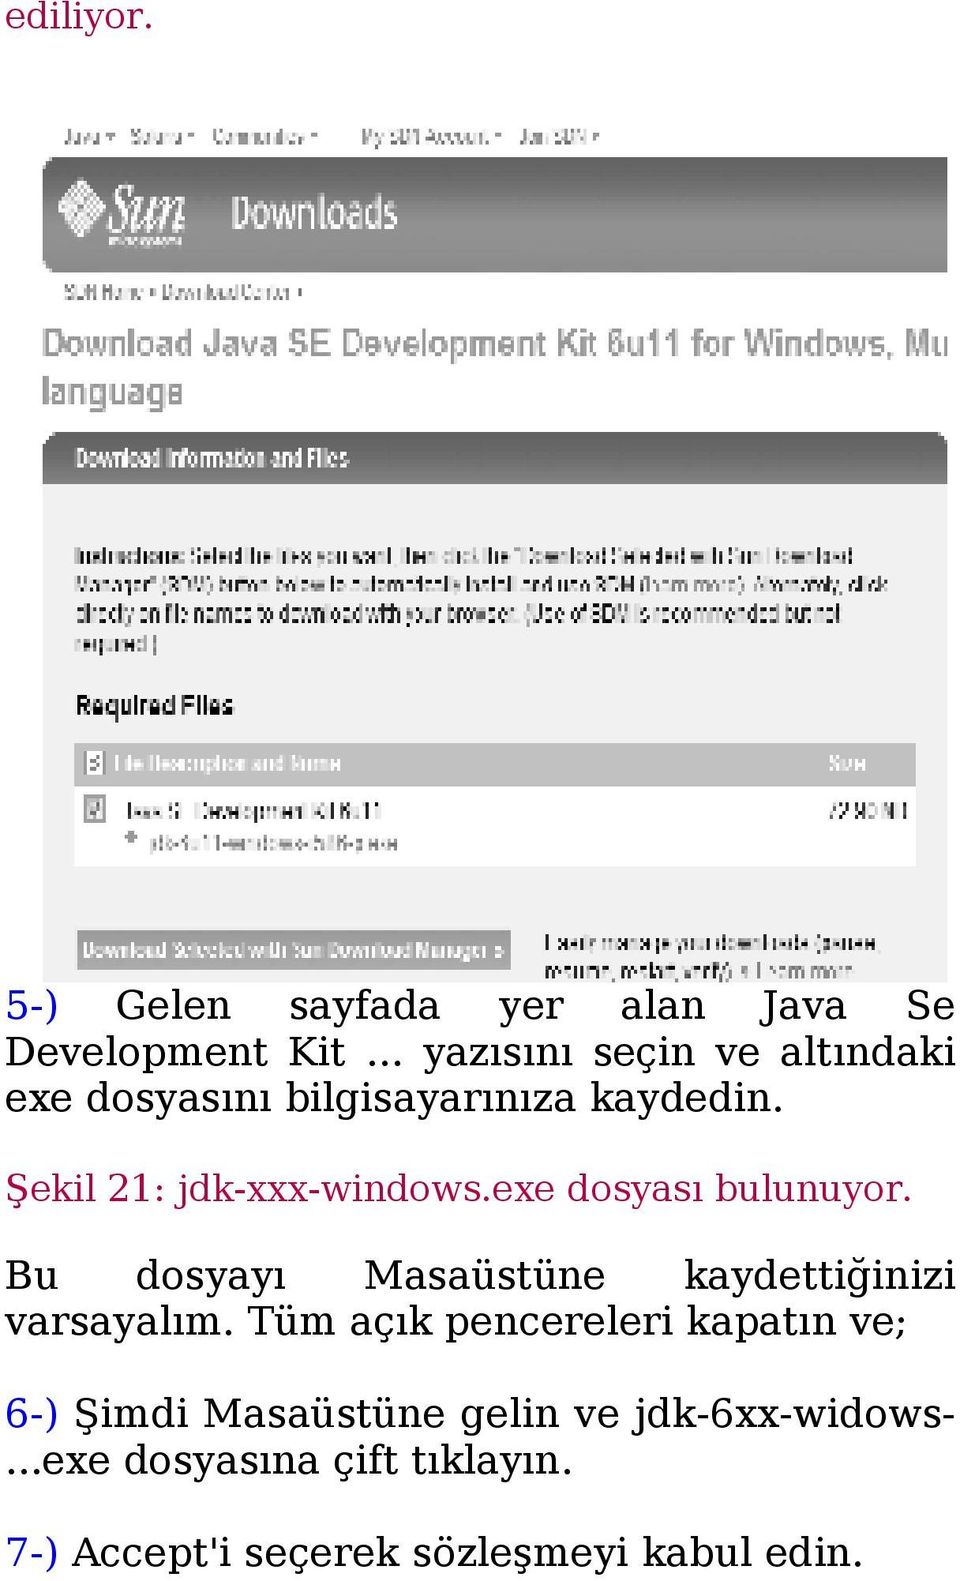 Şekil 21: jdk-xxx-windows.exe dosyası bulunuyor.